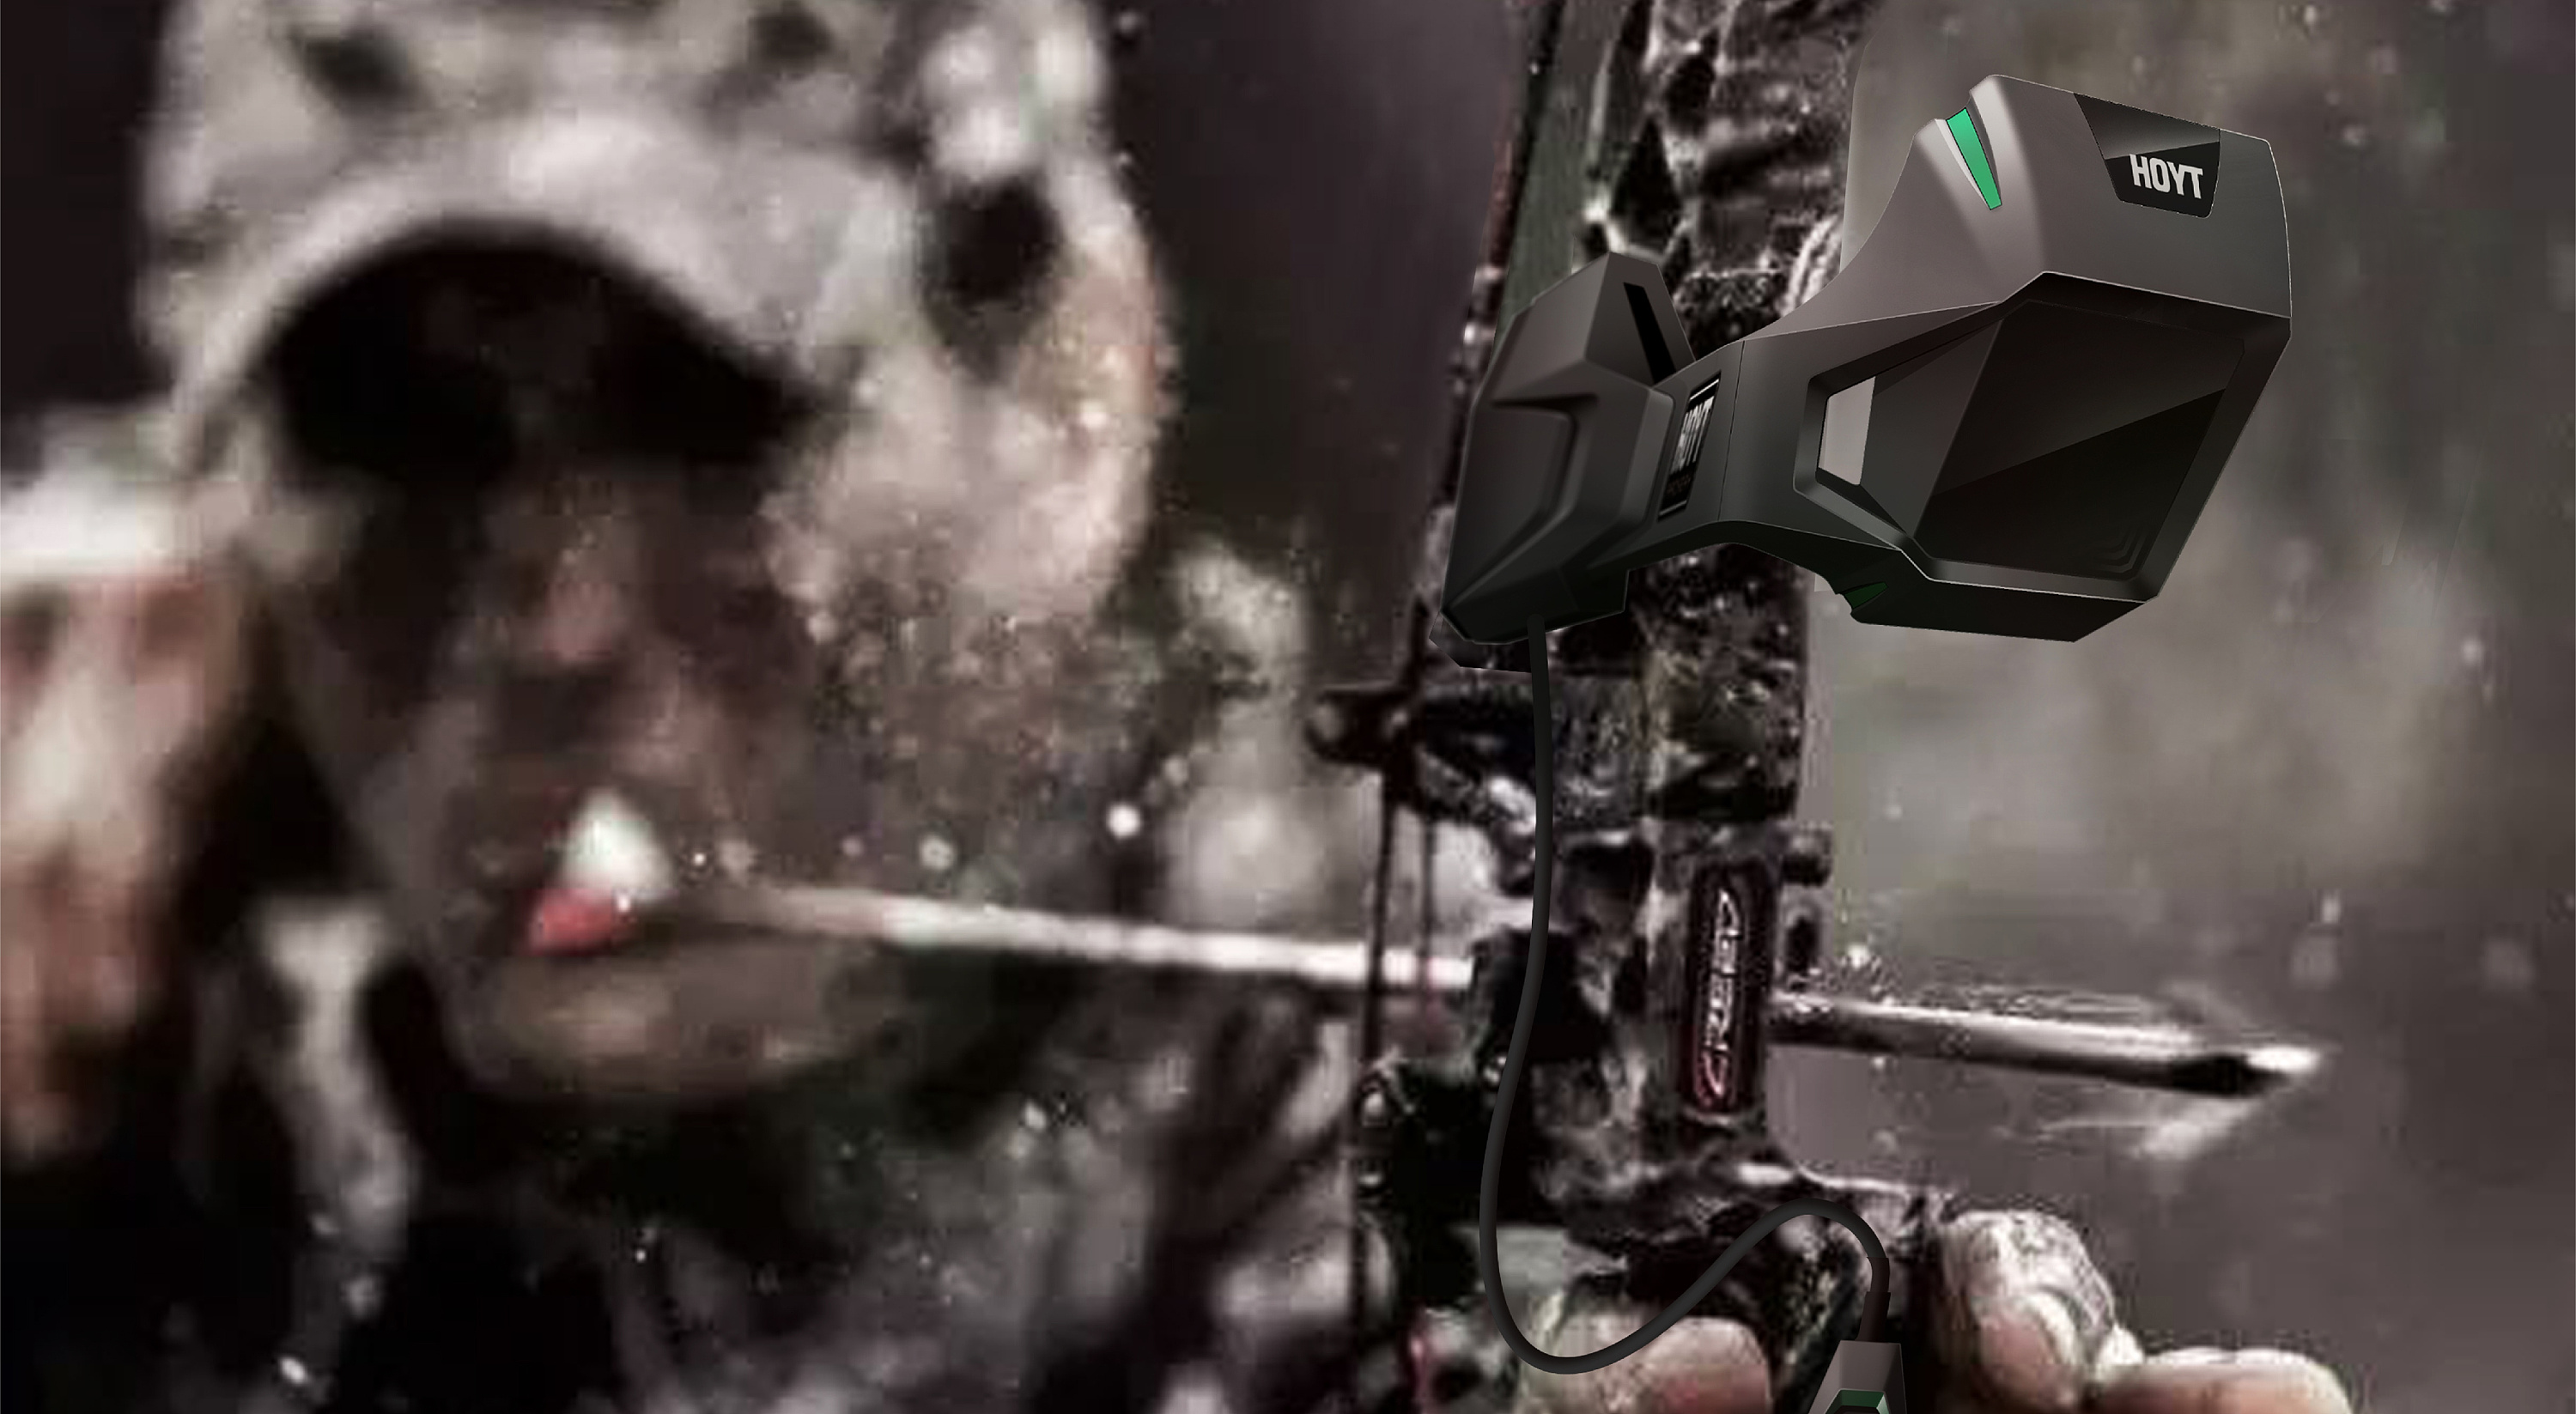 美军新一代单兵装备里的“外挂装备”：Vortex Optics XM157“单兵火控瞄具系统” & IVAS“集成视觉增强系统” - 知乎